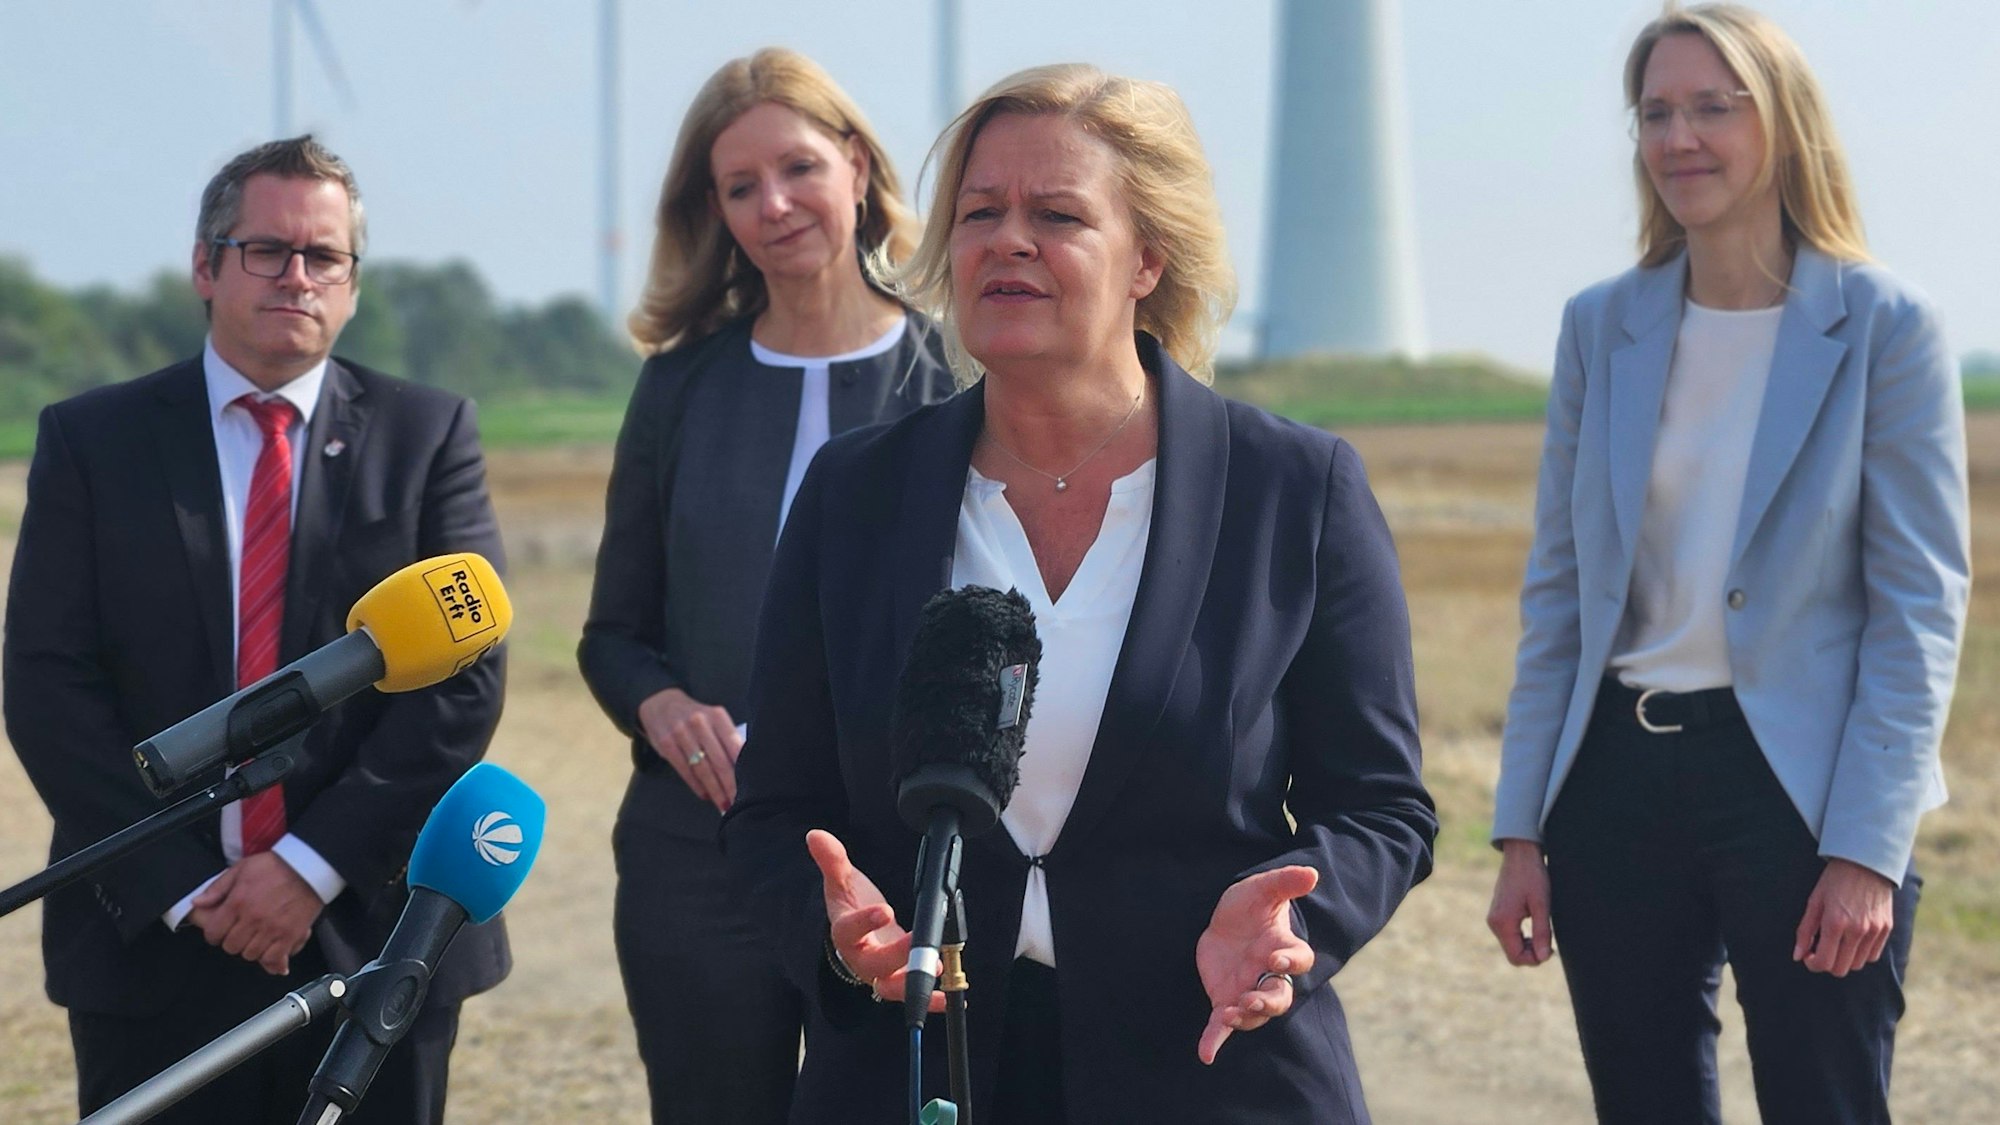 Bundesinnenministerin Nancy Faeser spricht vor Windrädern bei einem Pressetermin in Mikrophone. Hinter ihr stehen Bedburgs Bürgermeister Sascha Solbach und zwei Frauen von RWE.